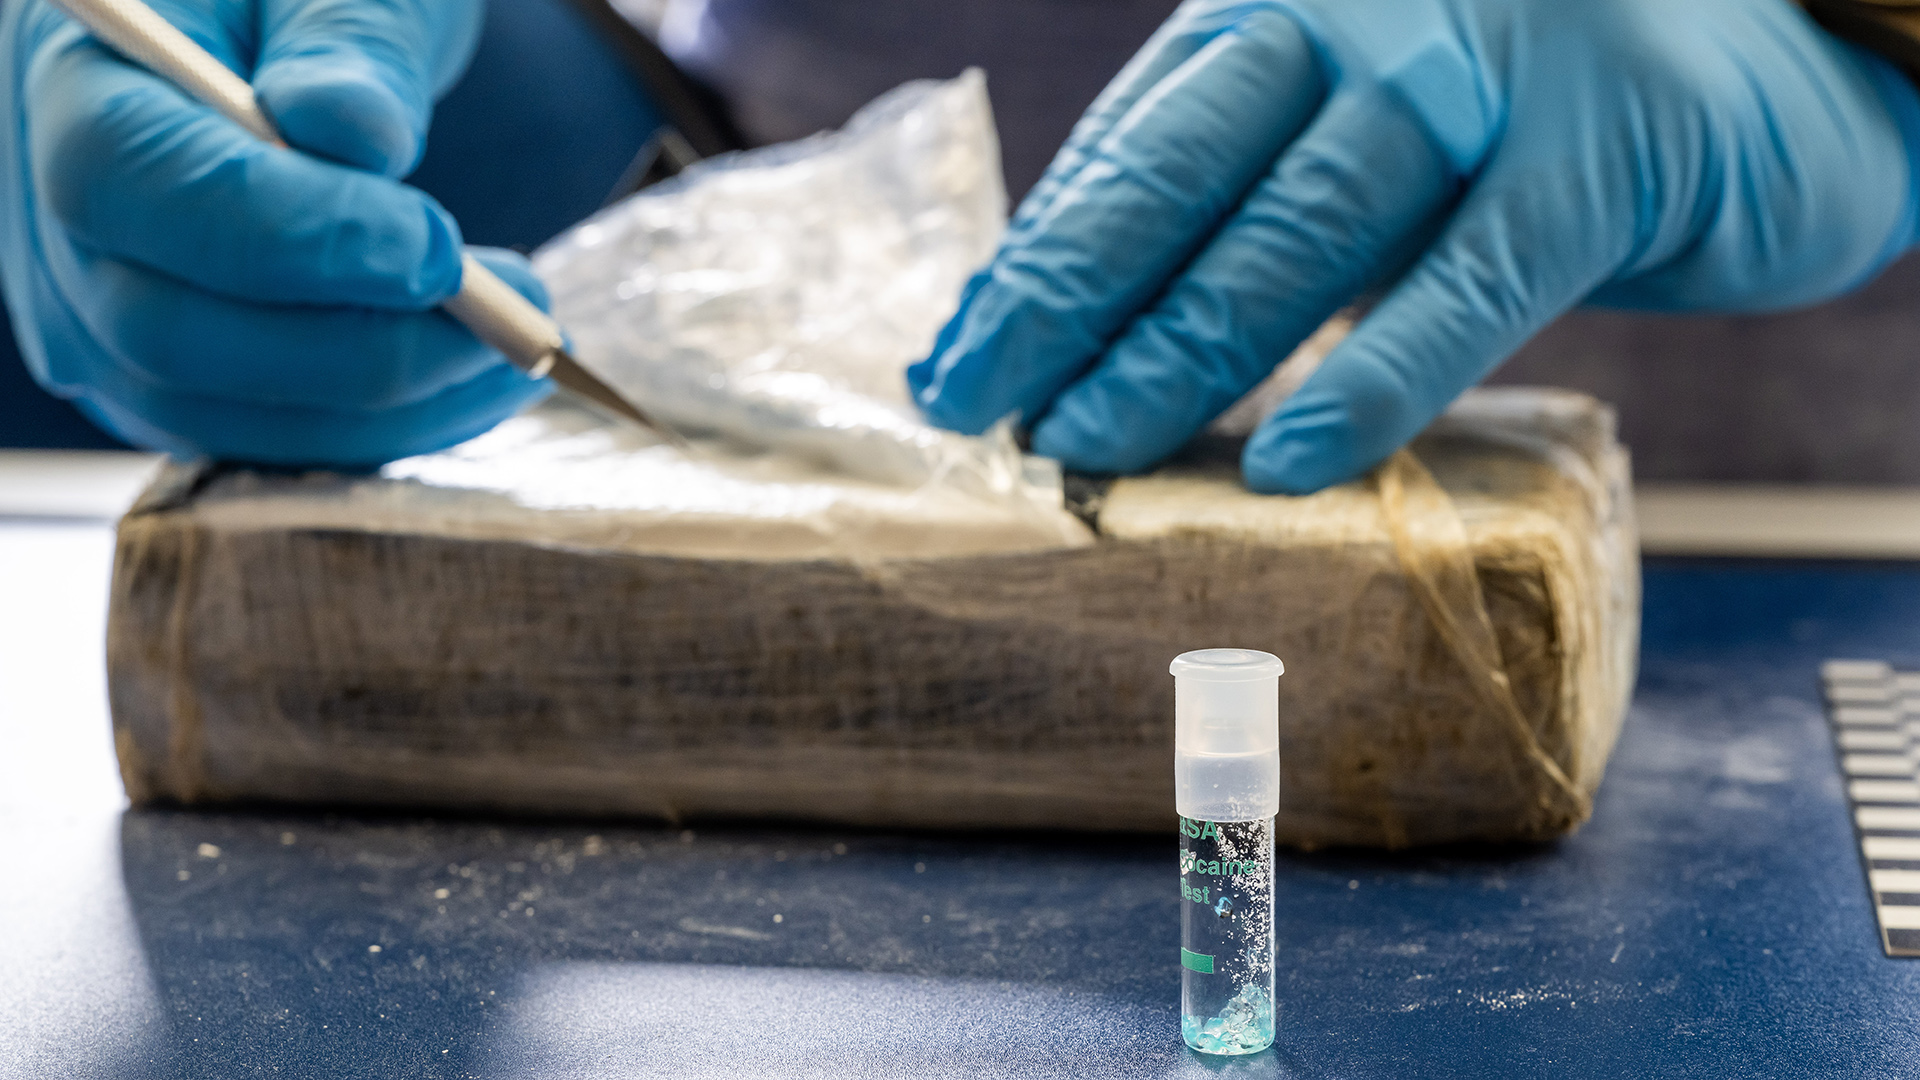 Ein Zollbeamter nimmt eine Probe von einem Kokainfund, die mittels einem Teströhrchen untersucht wird. | picture alliance/dpa